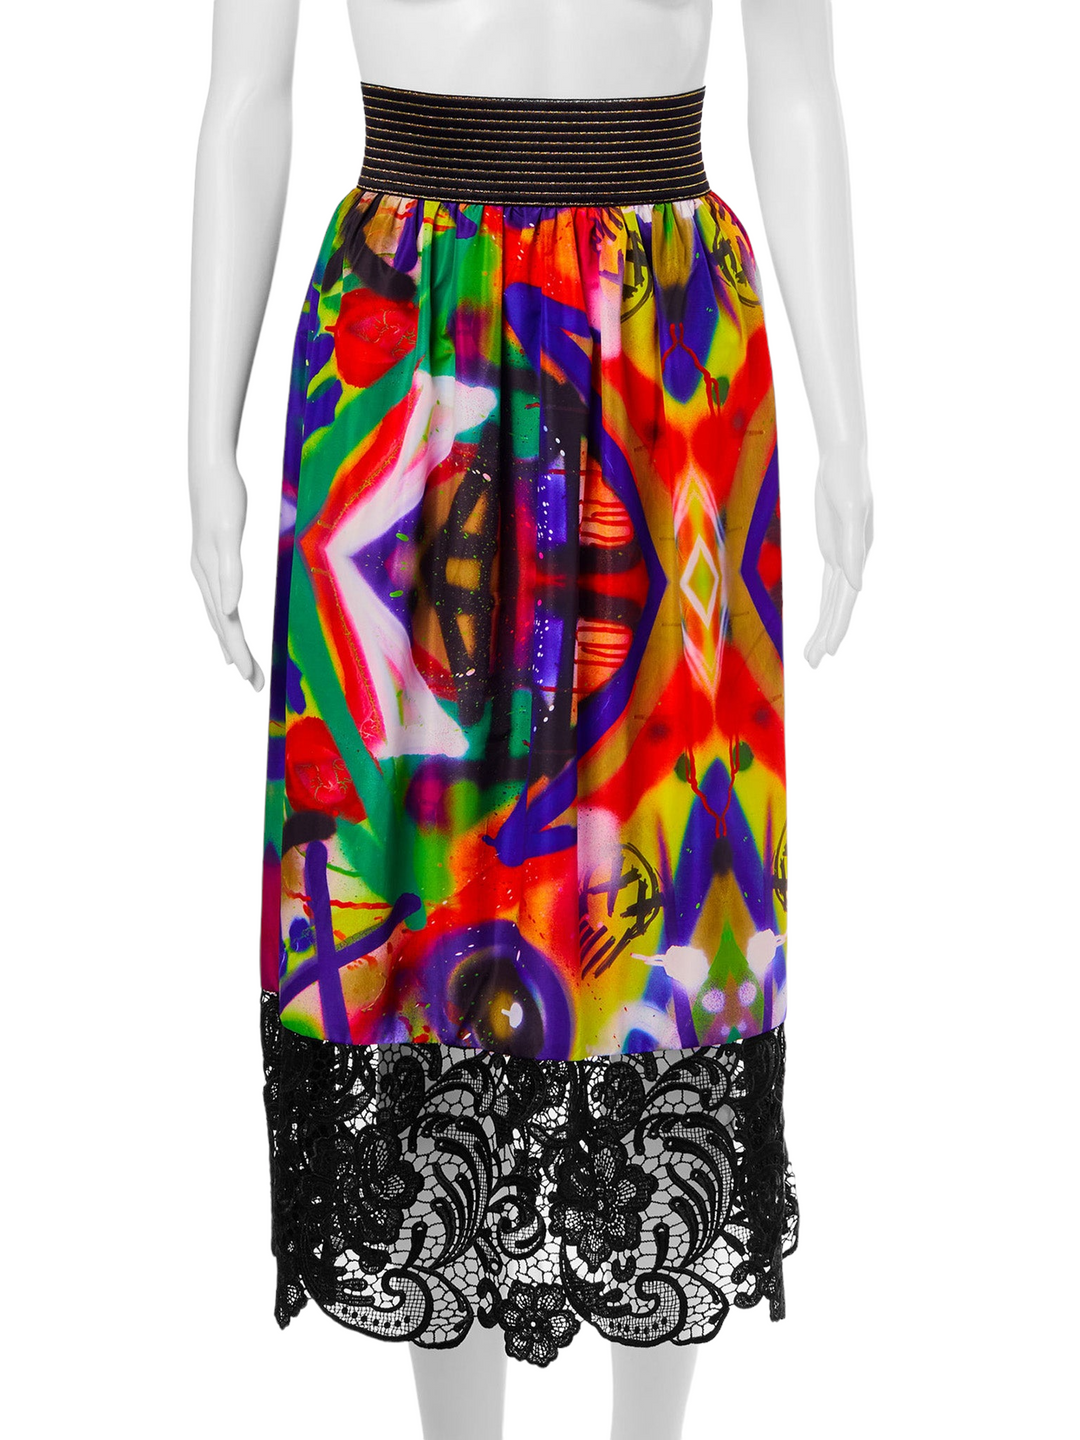 Lace Trim Midi Skirt in Graffiti Print (50% OFF)